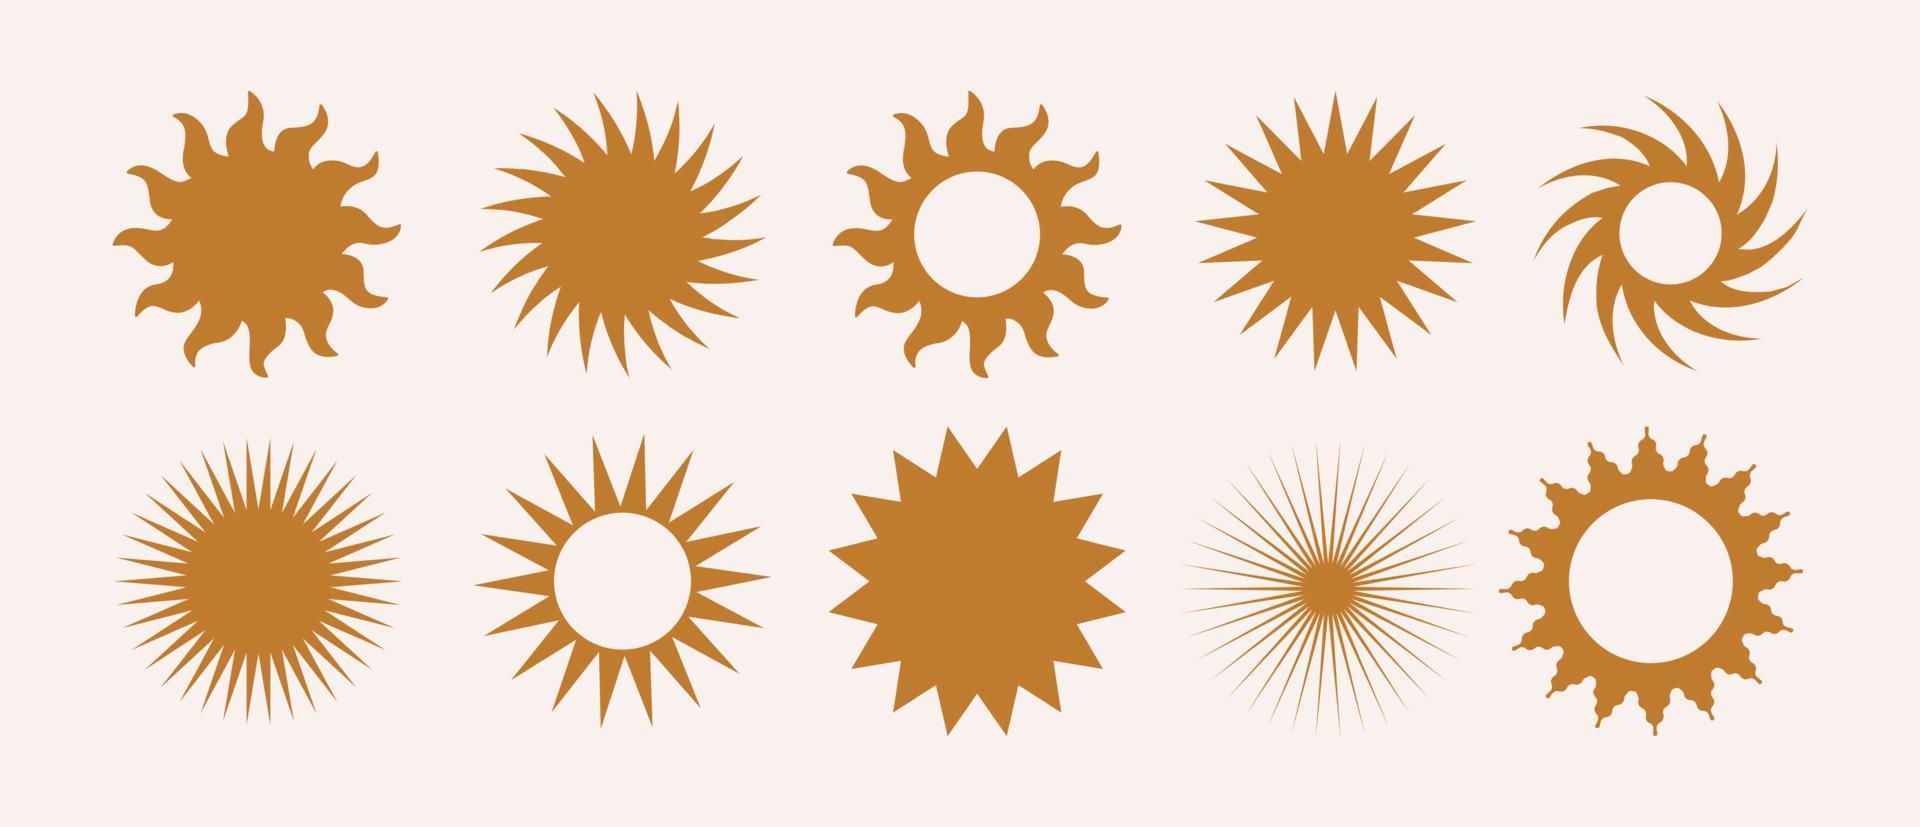 vetor definido logotipo, ícones e símbolos do sol boho. elementos de sol de design geométrico minimalista vários. todos os objetos são isolados